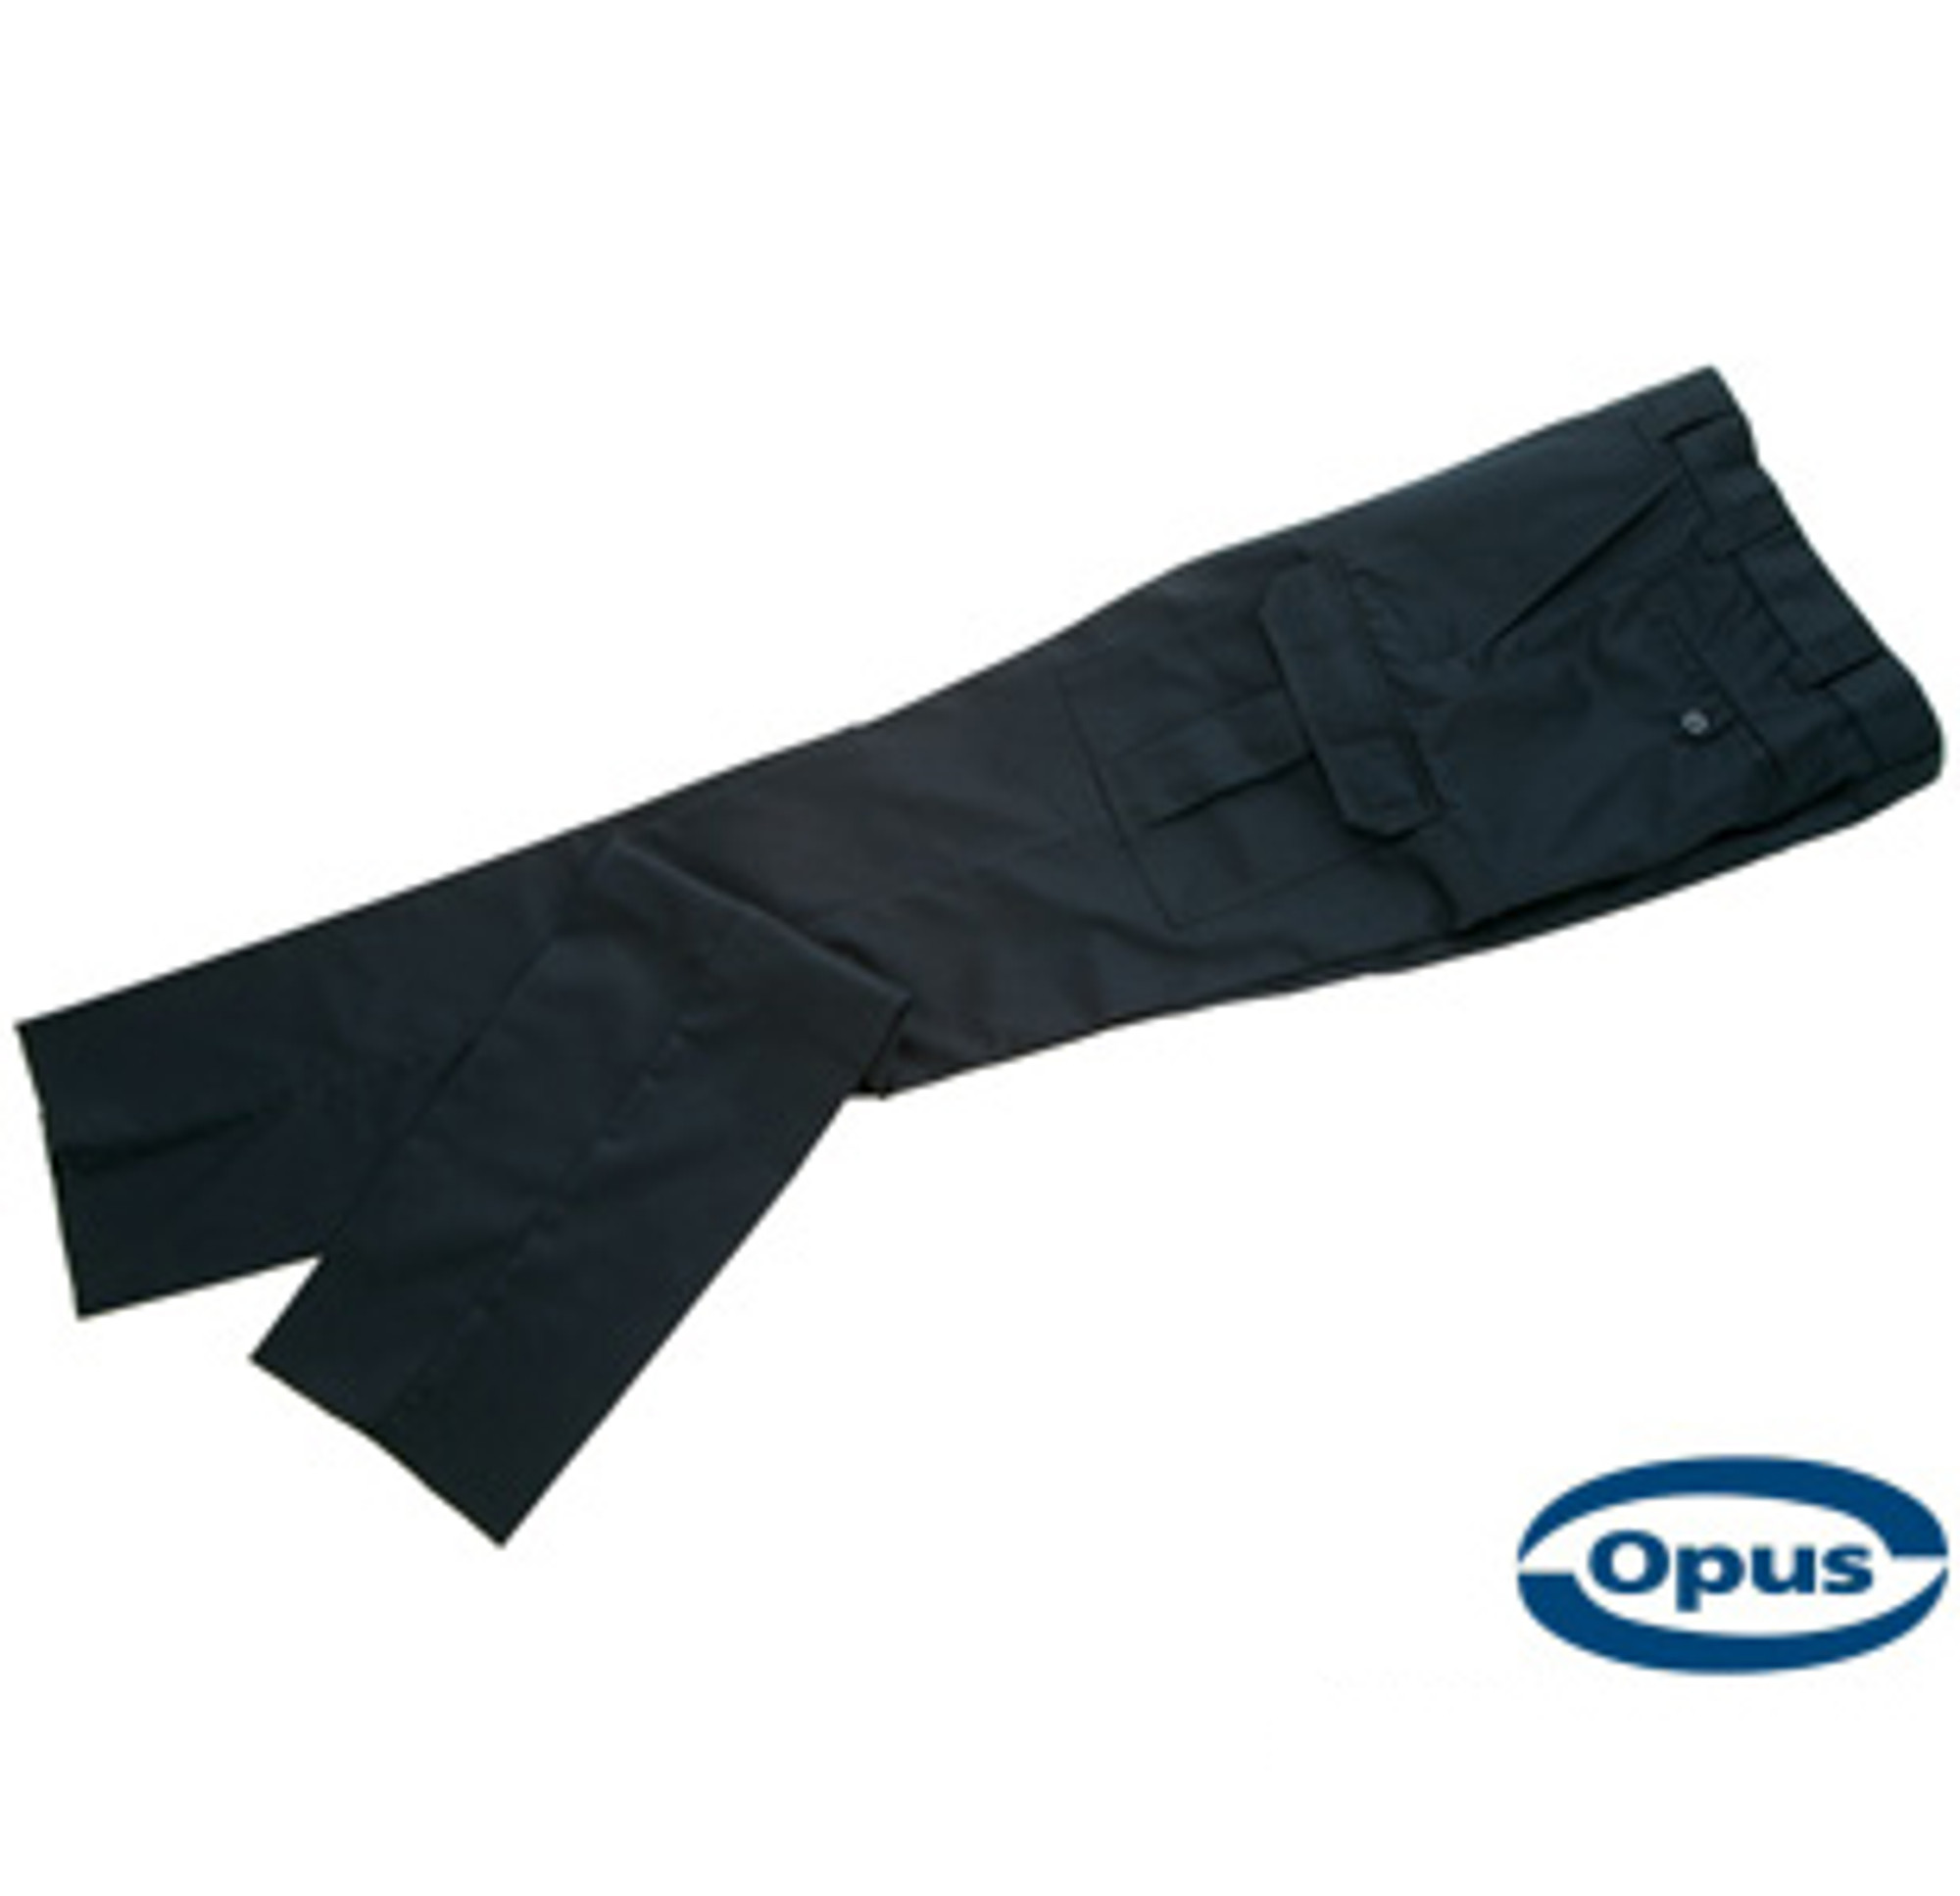 Opus CP68 Uniform Cargo Pants - LAPD Navy